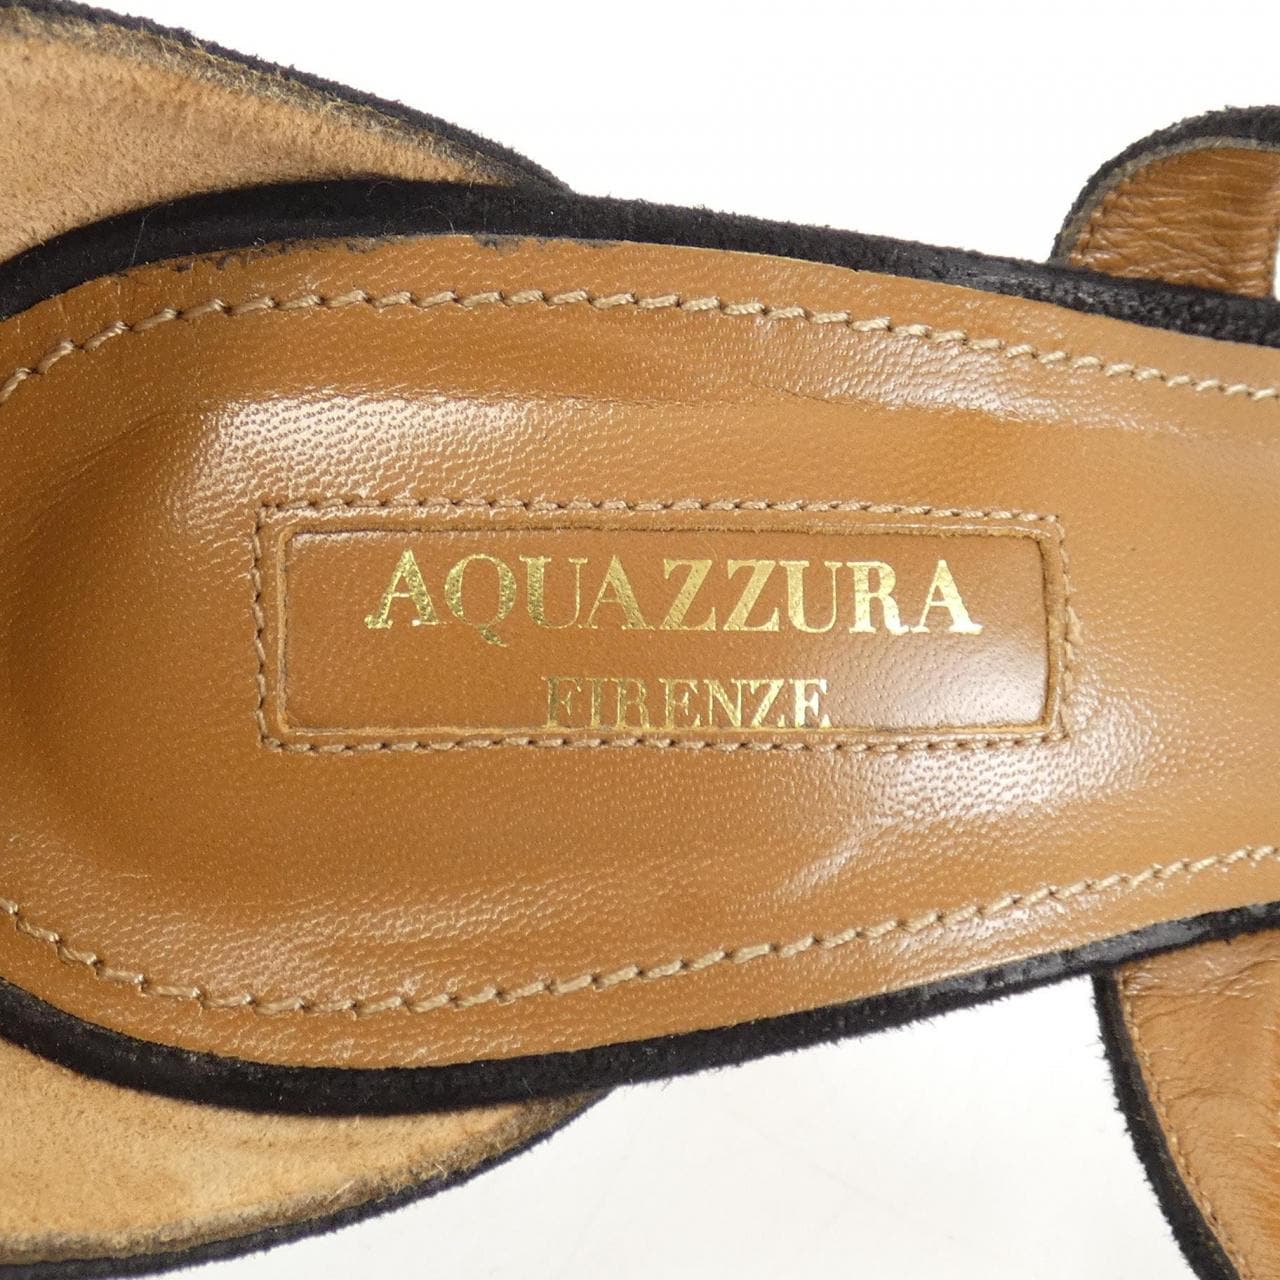 AQUAZZURA shoes